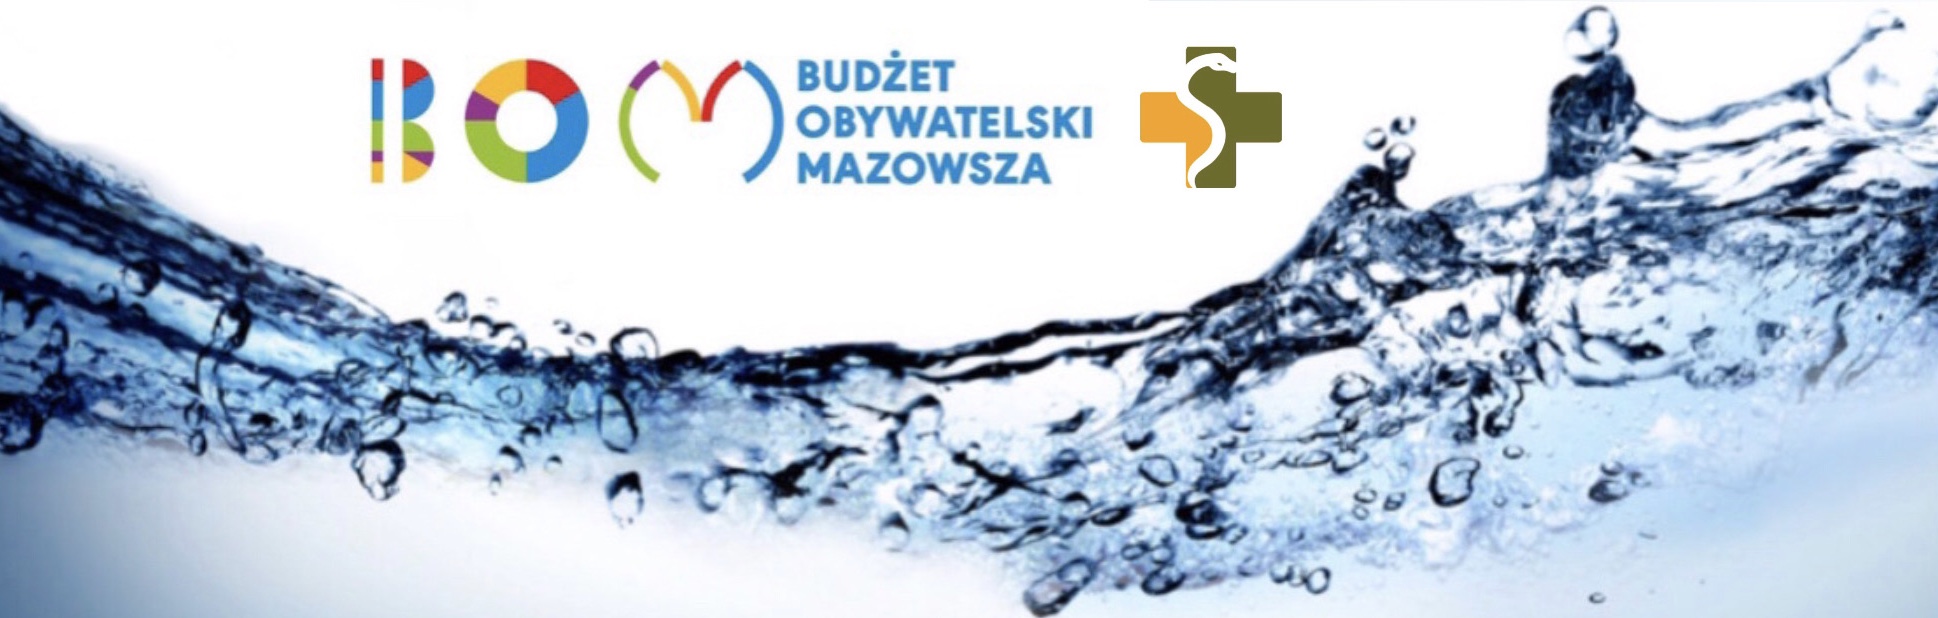 Grafika: woda a na górze logo budżetu obywatelskiego mazowisza i MWOMP